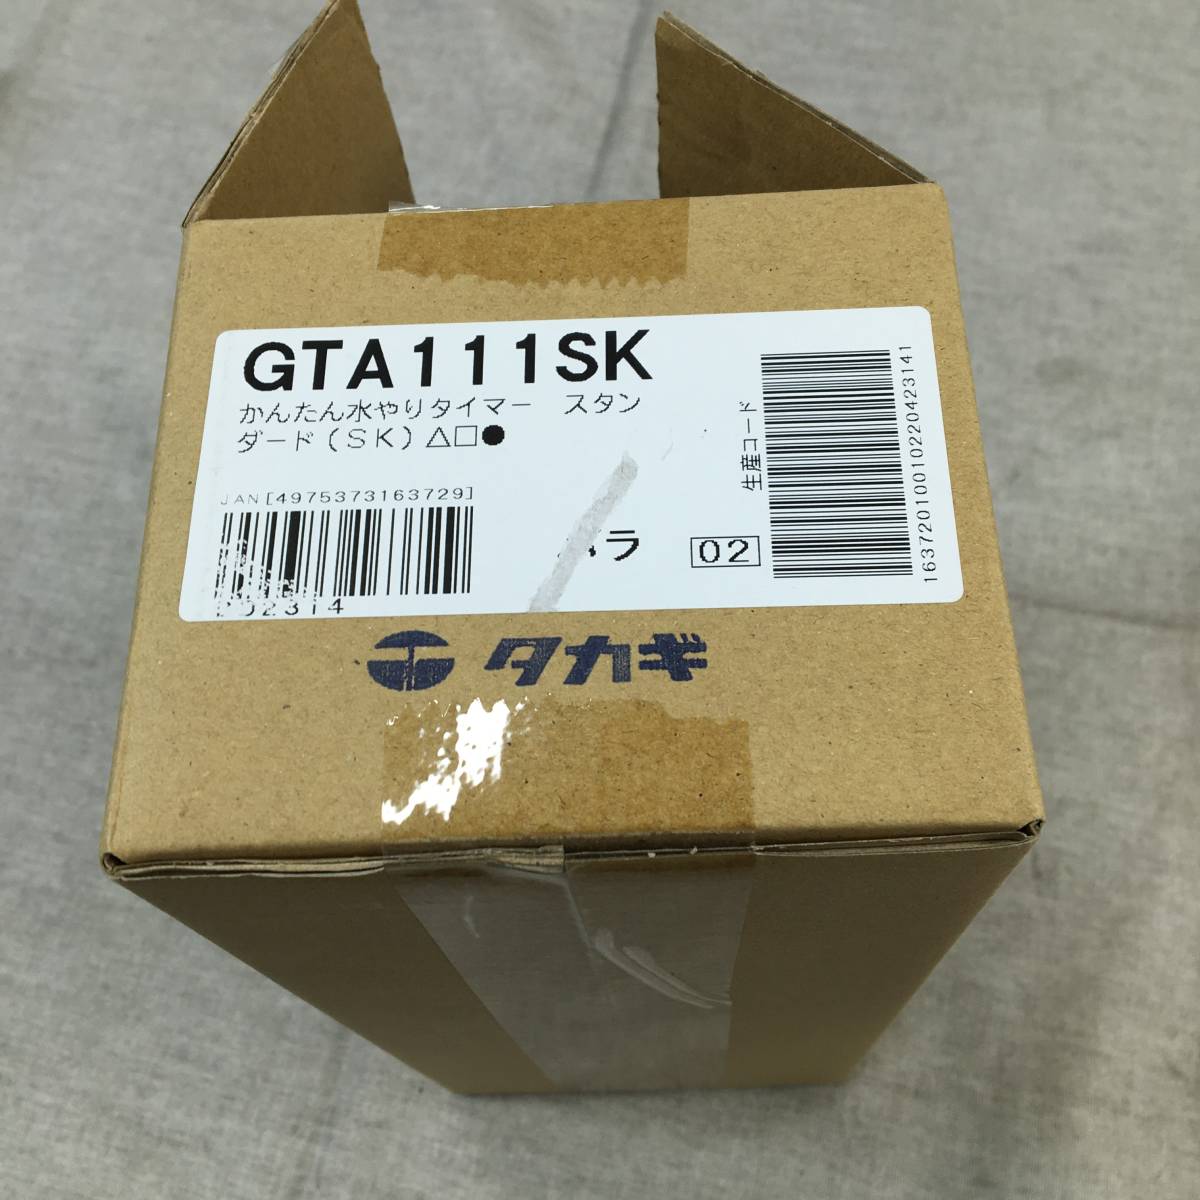  текущее состояние товар Takagi (takagi) разбрызгивание воды таймер автоматика полив простой полив таймер стандартный (SK) автоматика разбрызгивание воды машина таймер предварительный заказ GTA111SK